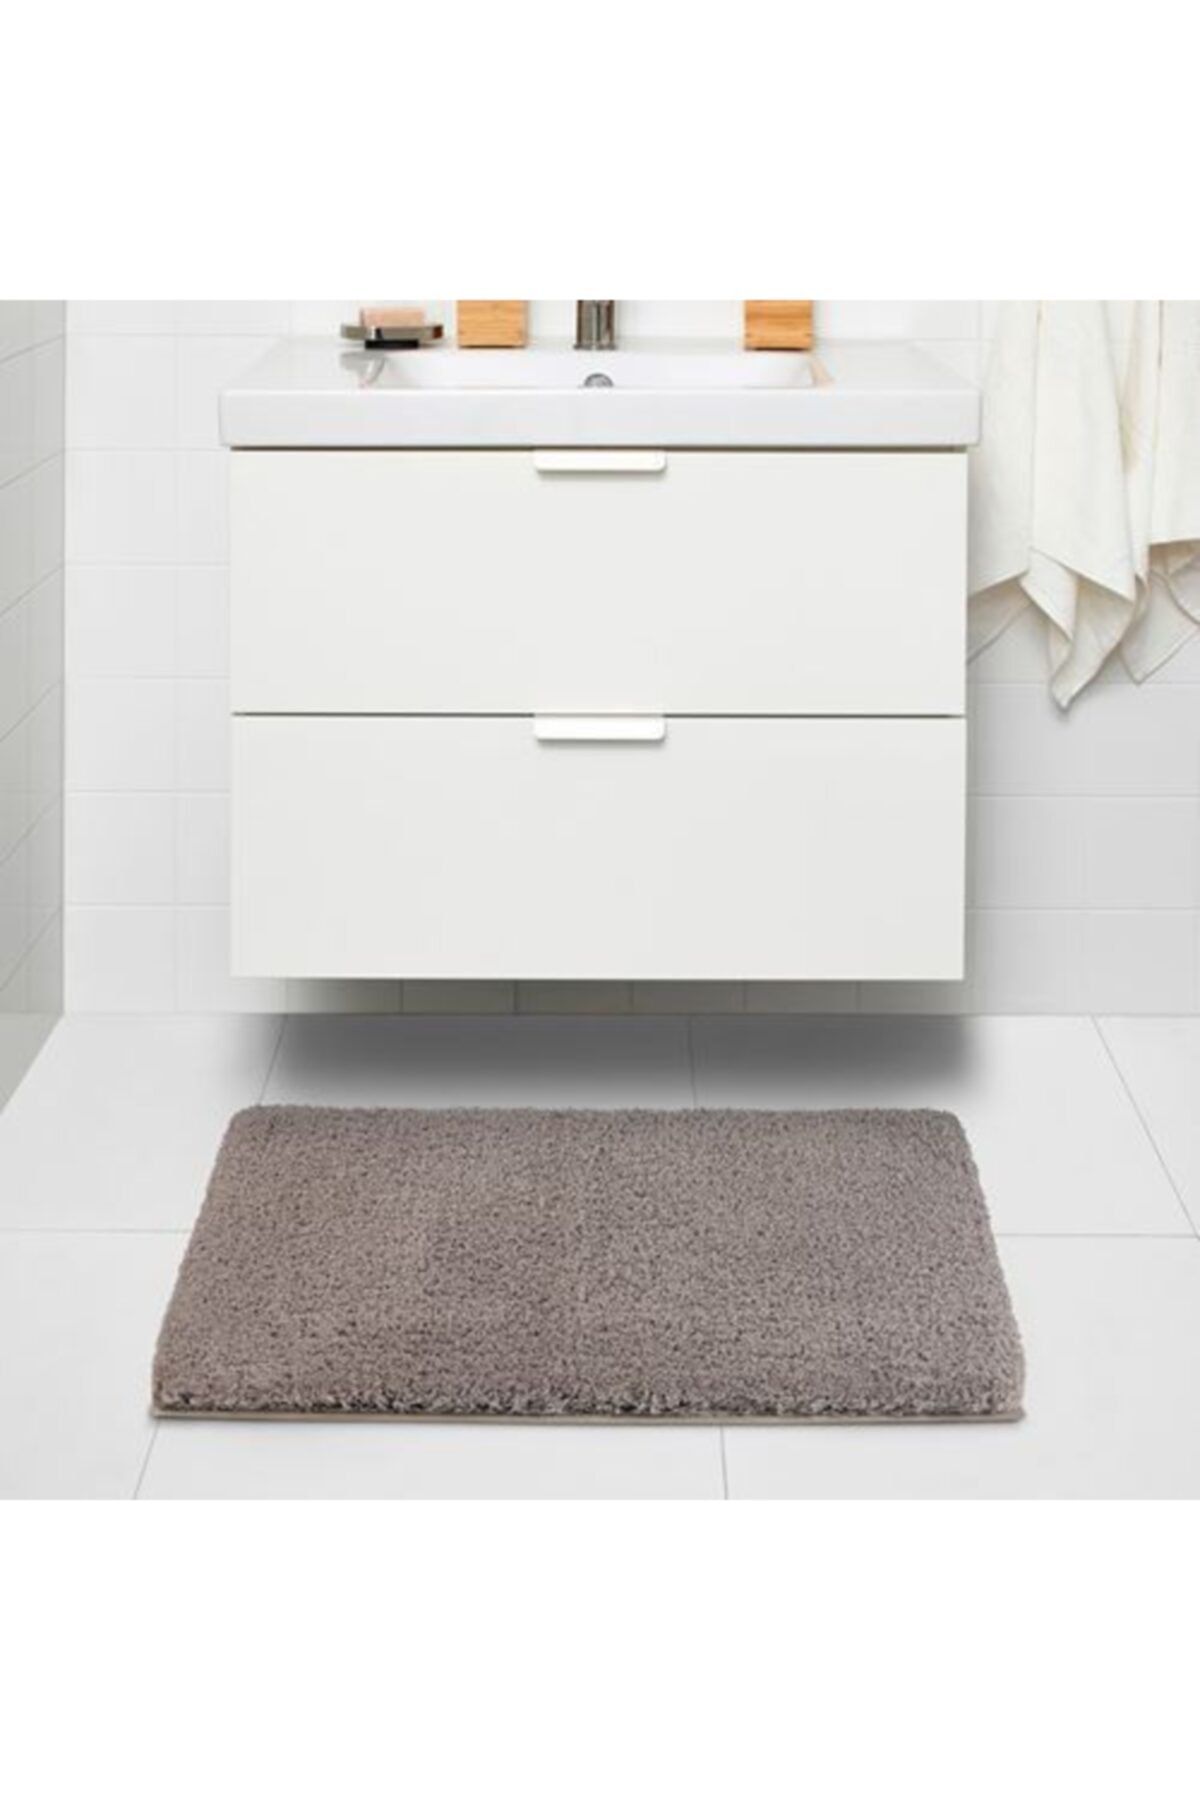 IKEA Banyo Paspası Bej Ren Mikrofiber 60x90 cm Banyo Halısı